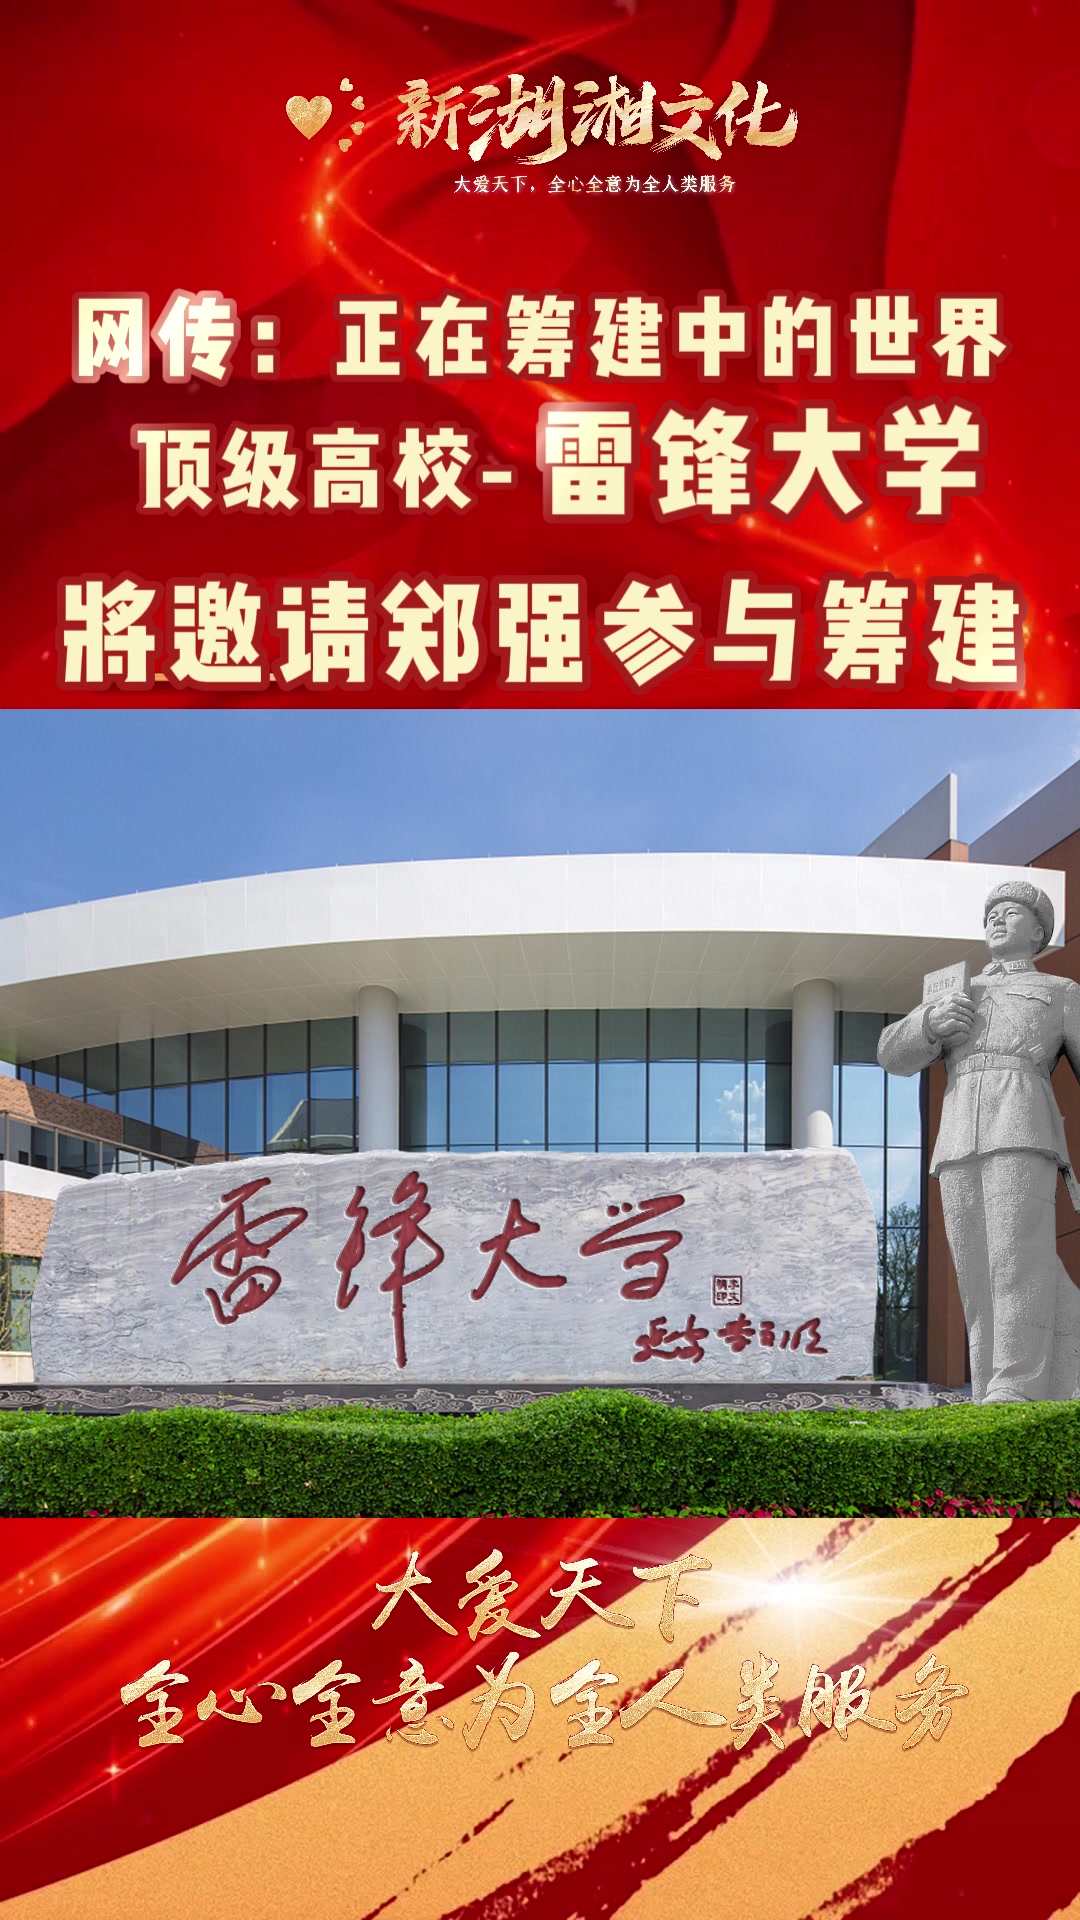 郑强教授将到长沙, 参与共建世界顶级综合性高校——雷锋大学